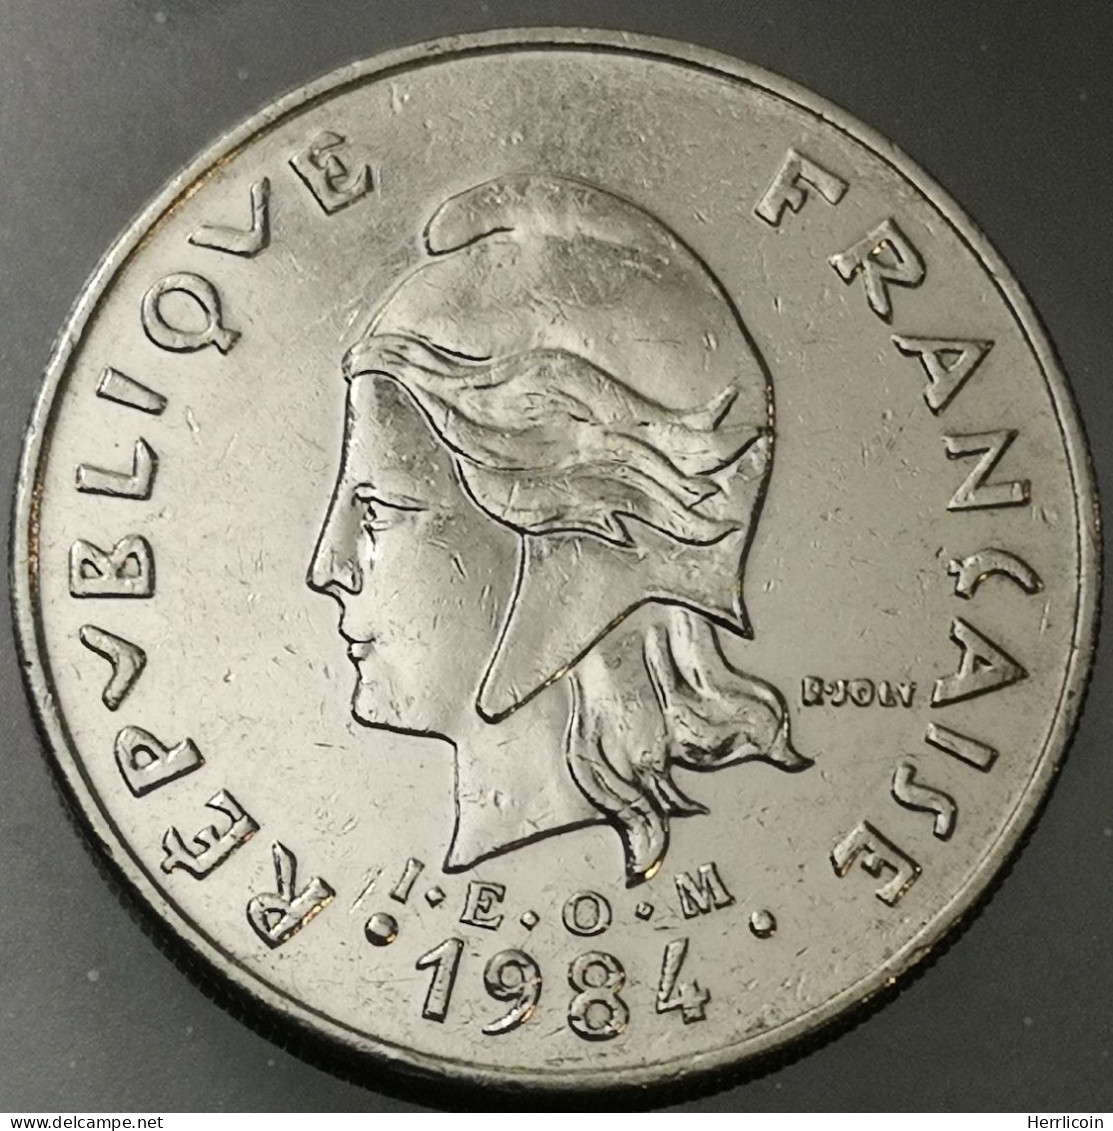 Monnaie Polynésie Française - 1984  - 20 Francs IEOM - Polinesia Francesa